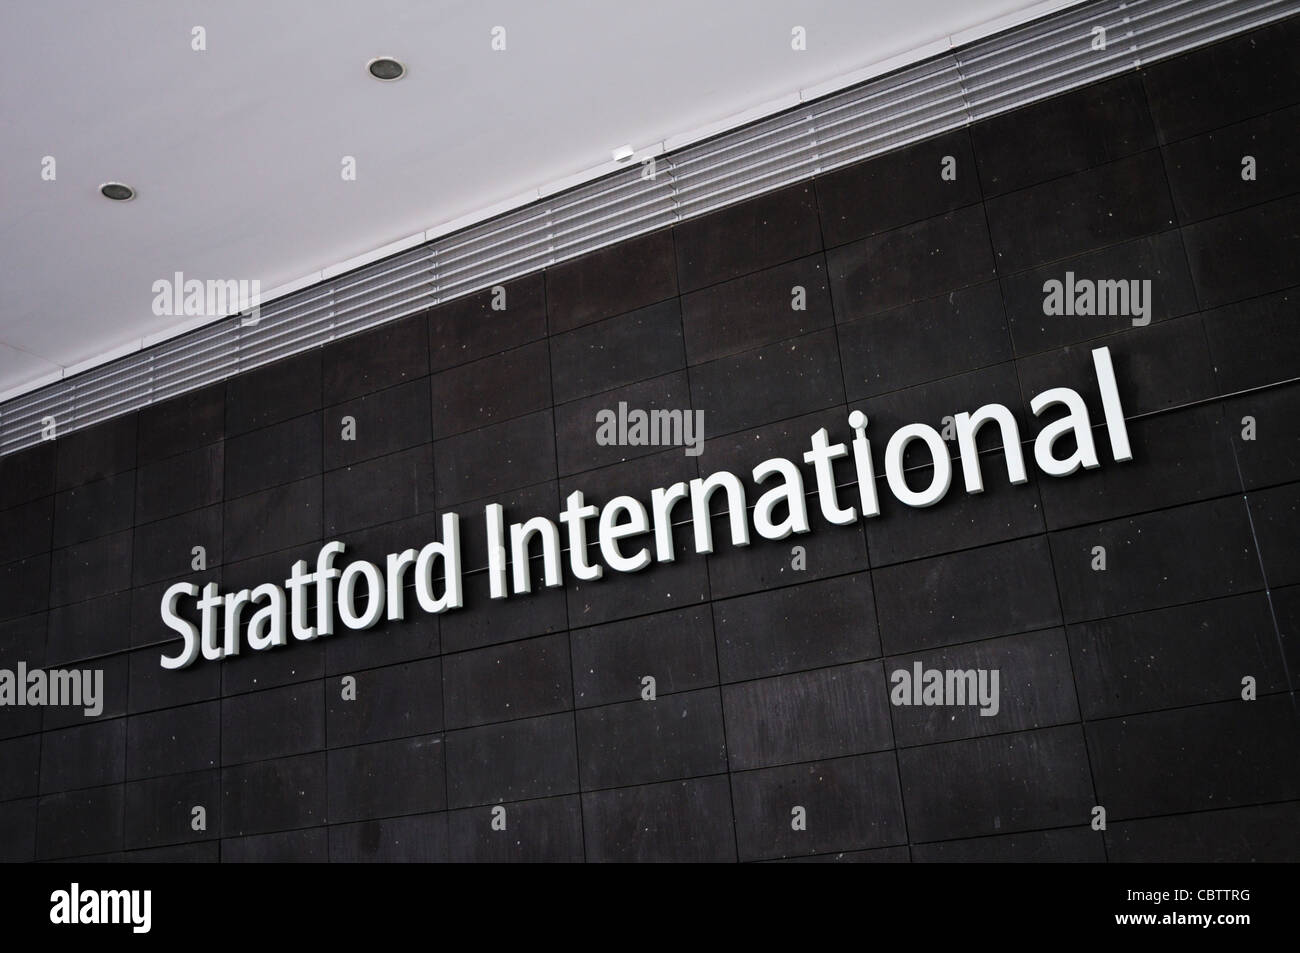 Stratford International Station Sign, Stratford, London, England, UK Stock Photo